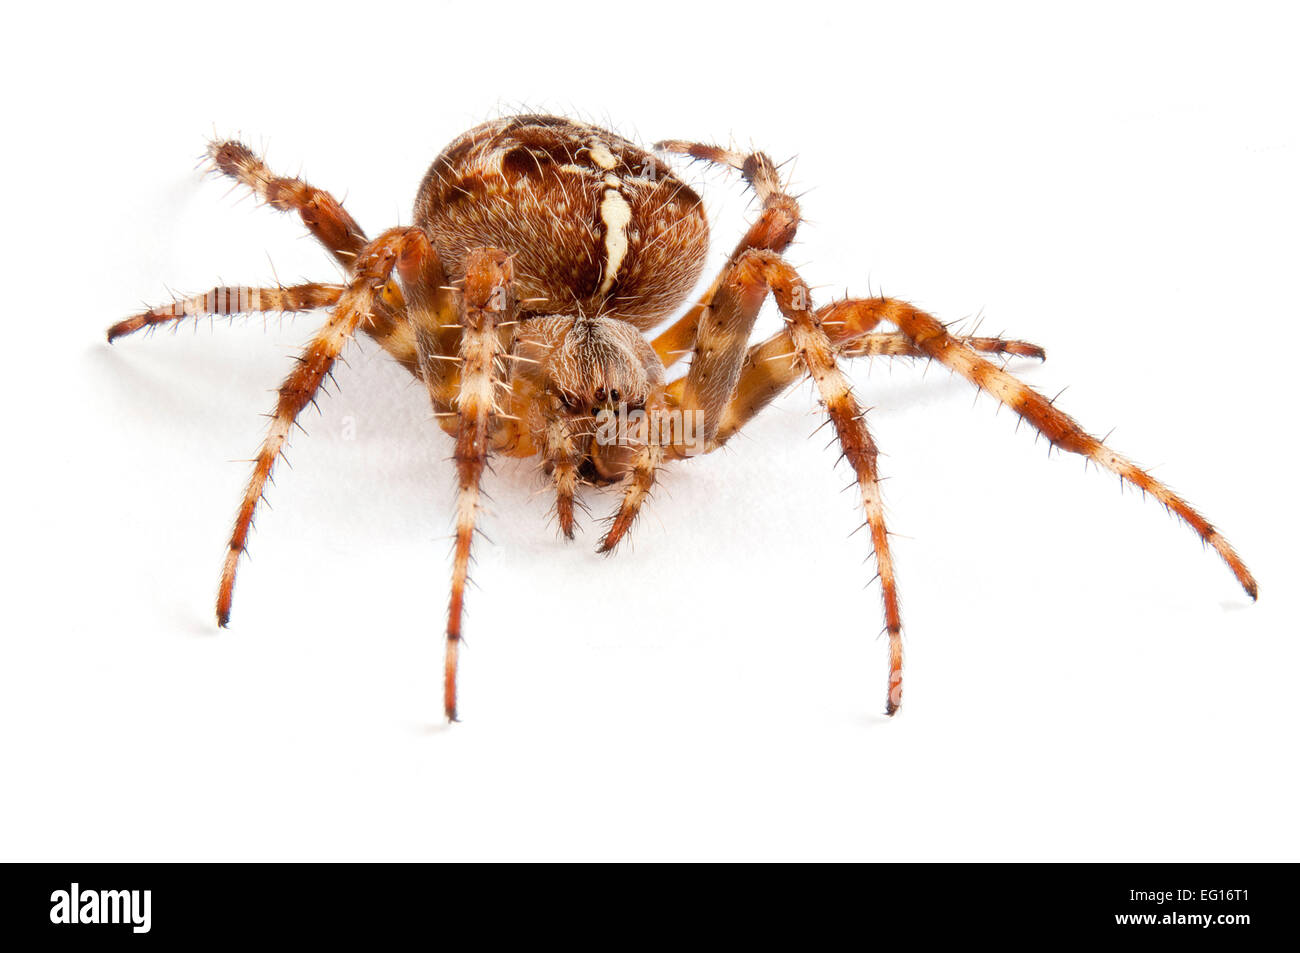 BT9TFE Araneous diadenatus giardino comune spider regno unito su sfondo bianco Foto Stock